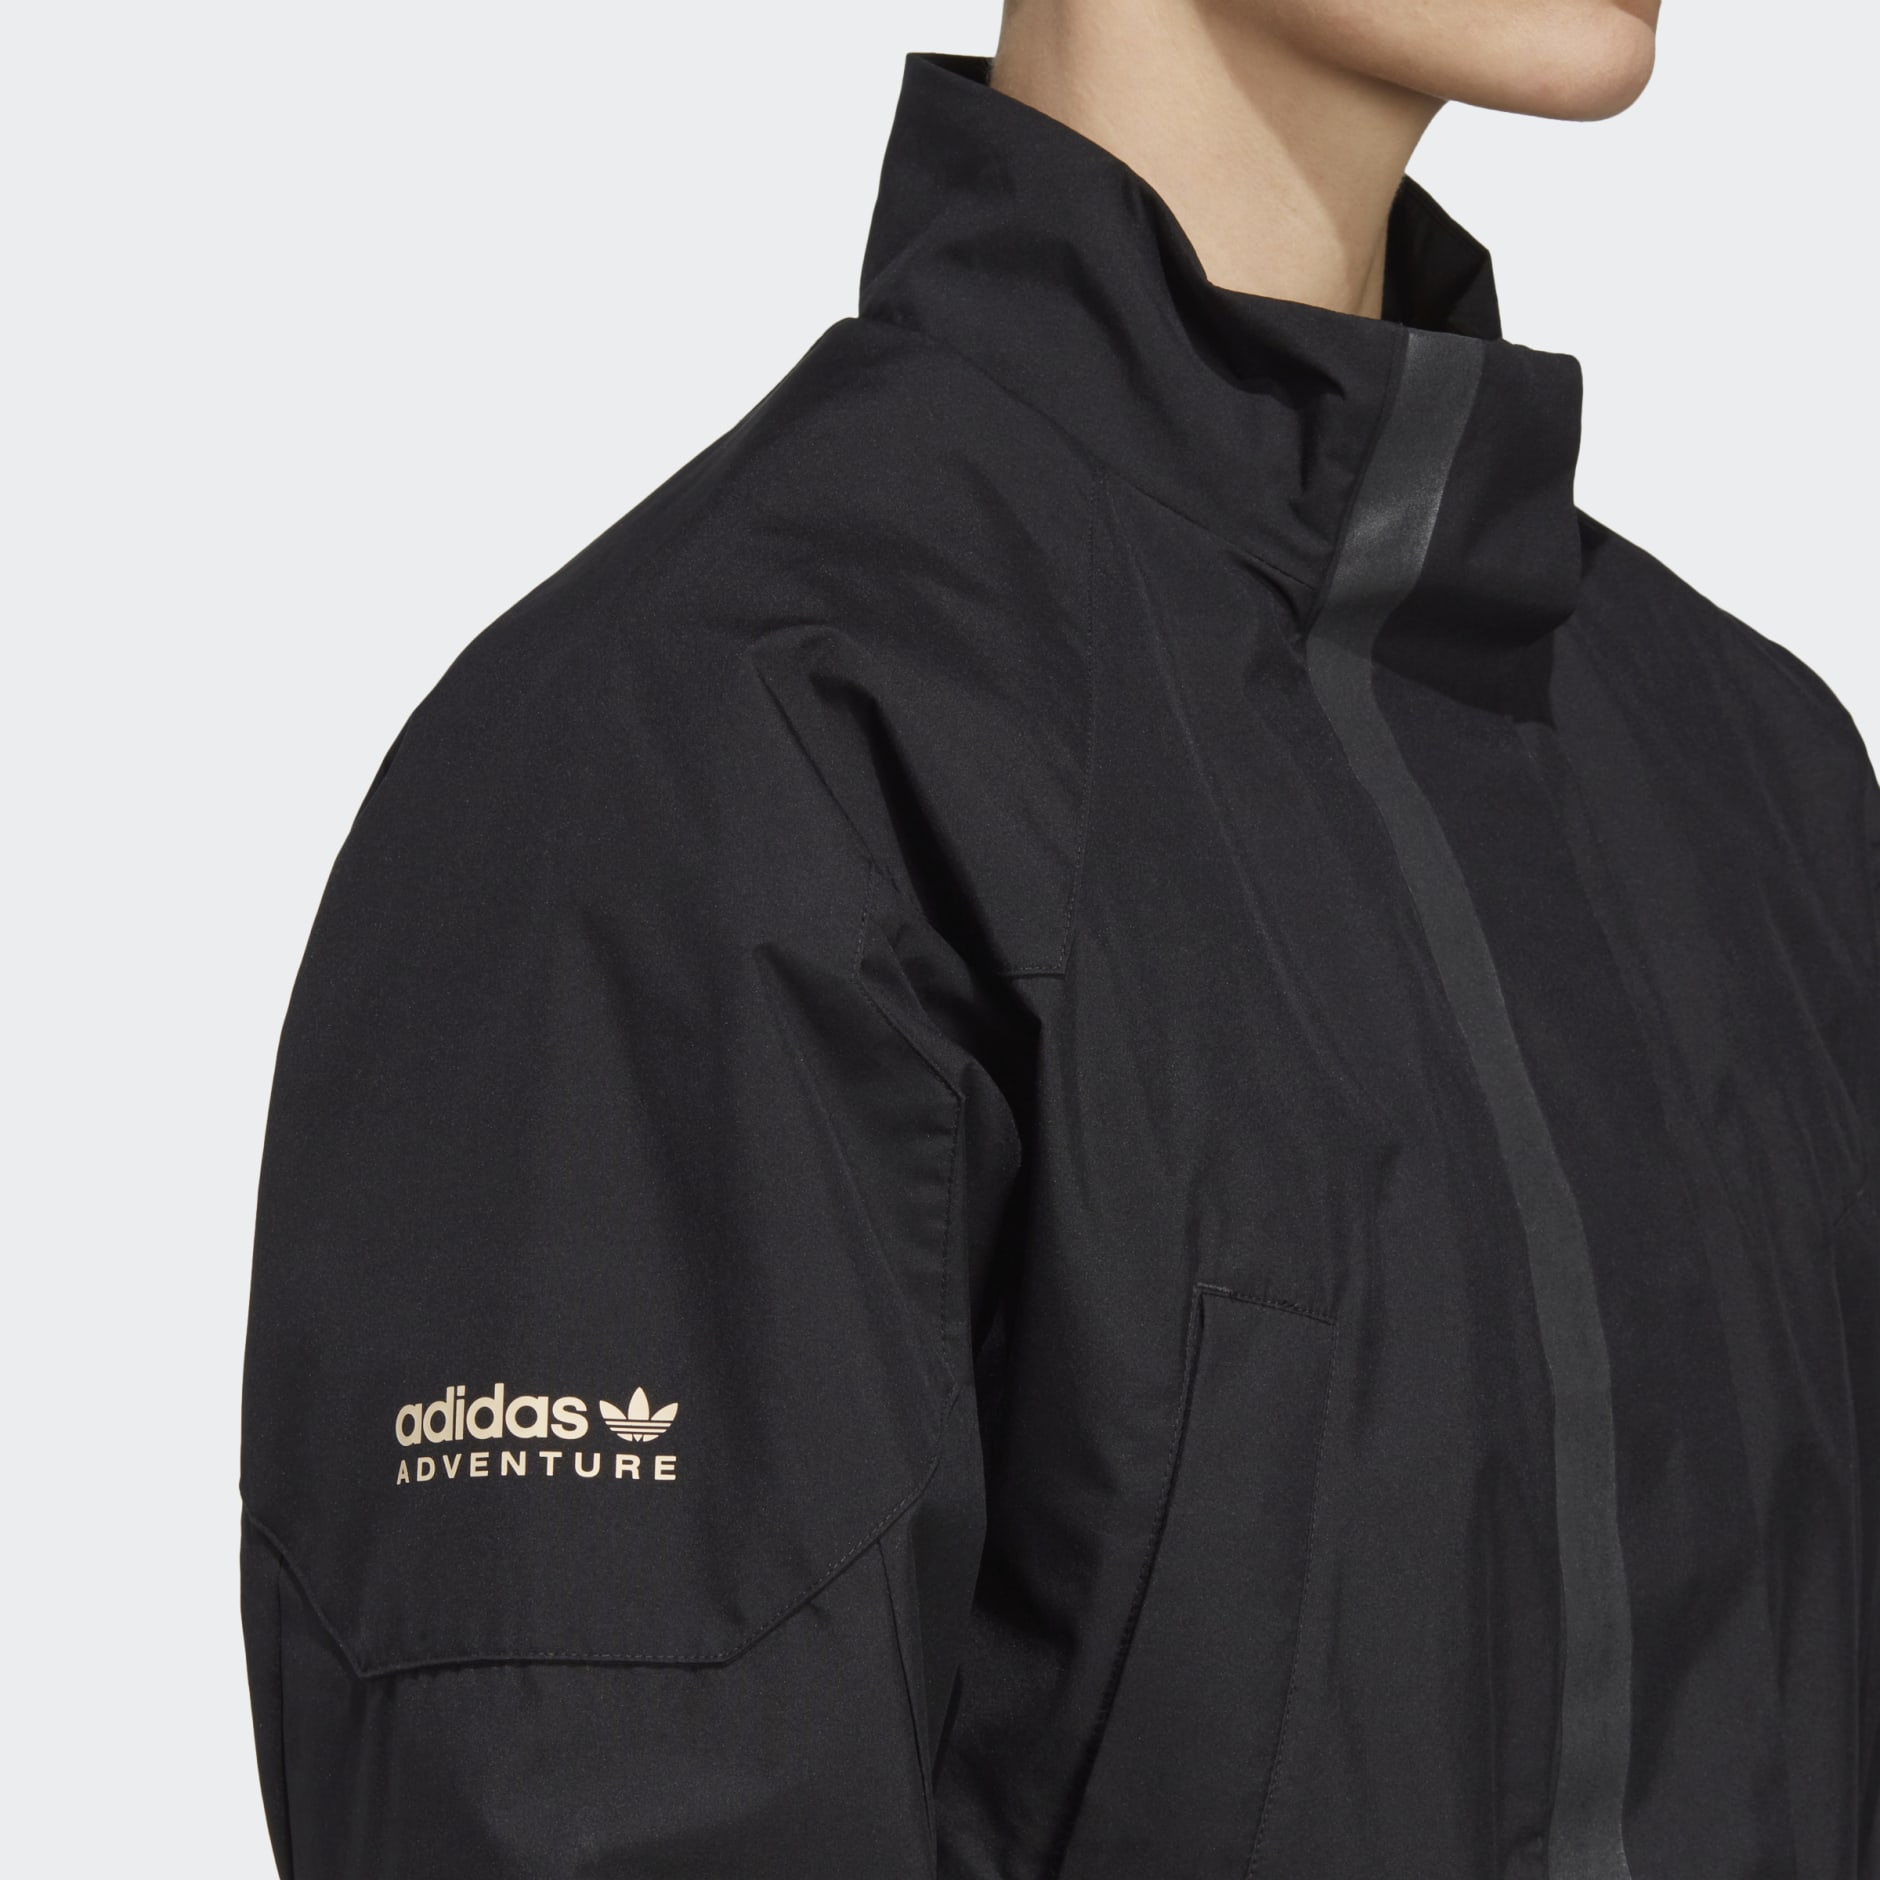 adidas adidas Adventure Jacket Dress - Black | adidas UAE